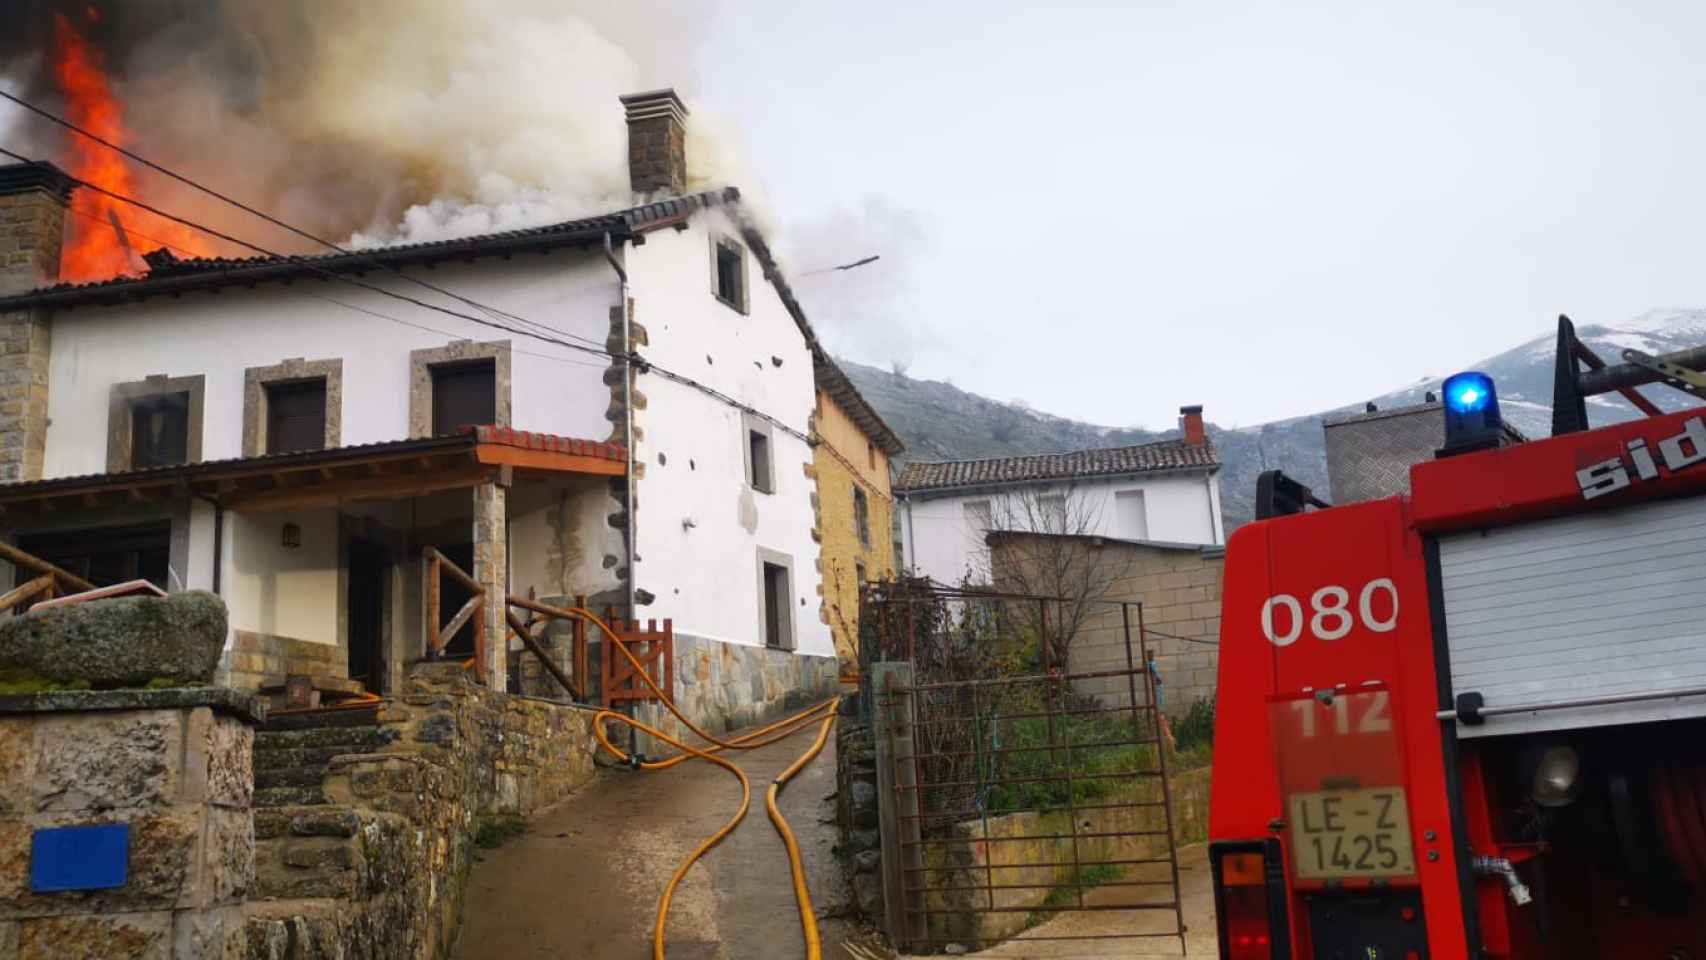 Los bomberos sofocando las llamas de una vivienda en un pueblo de León